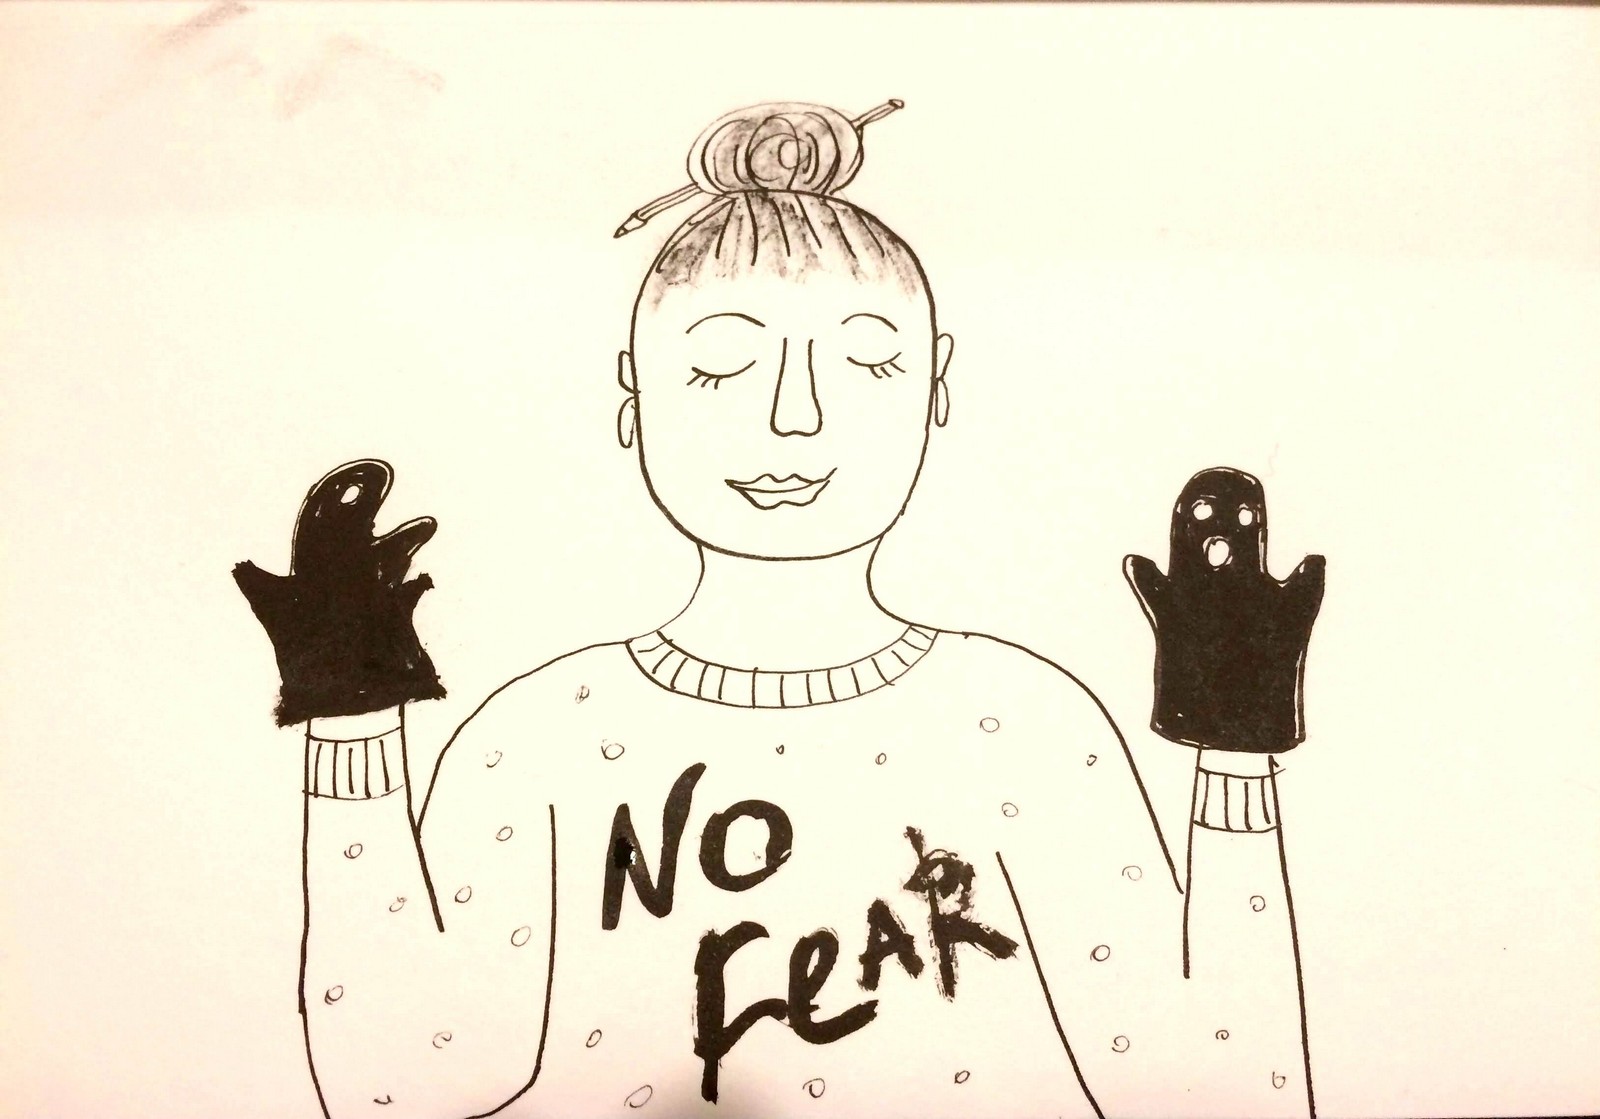 Без страха: иллюстрация Нади Демкиной к статье о страхах в творчестве | Nadin Piter Надин Питер блог Нади Демкиной